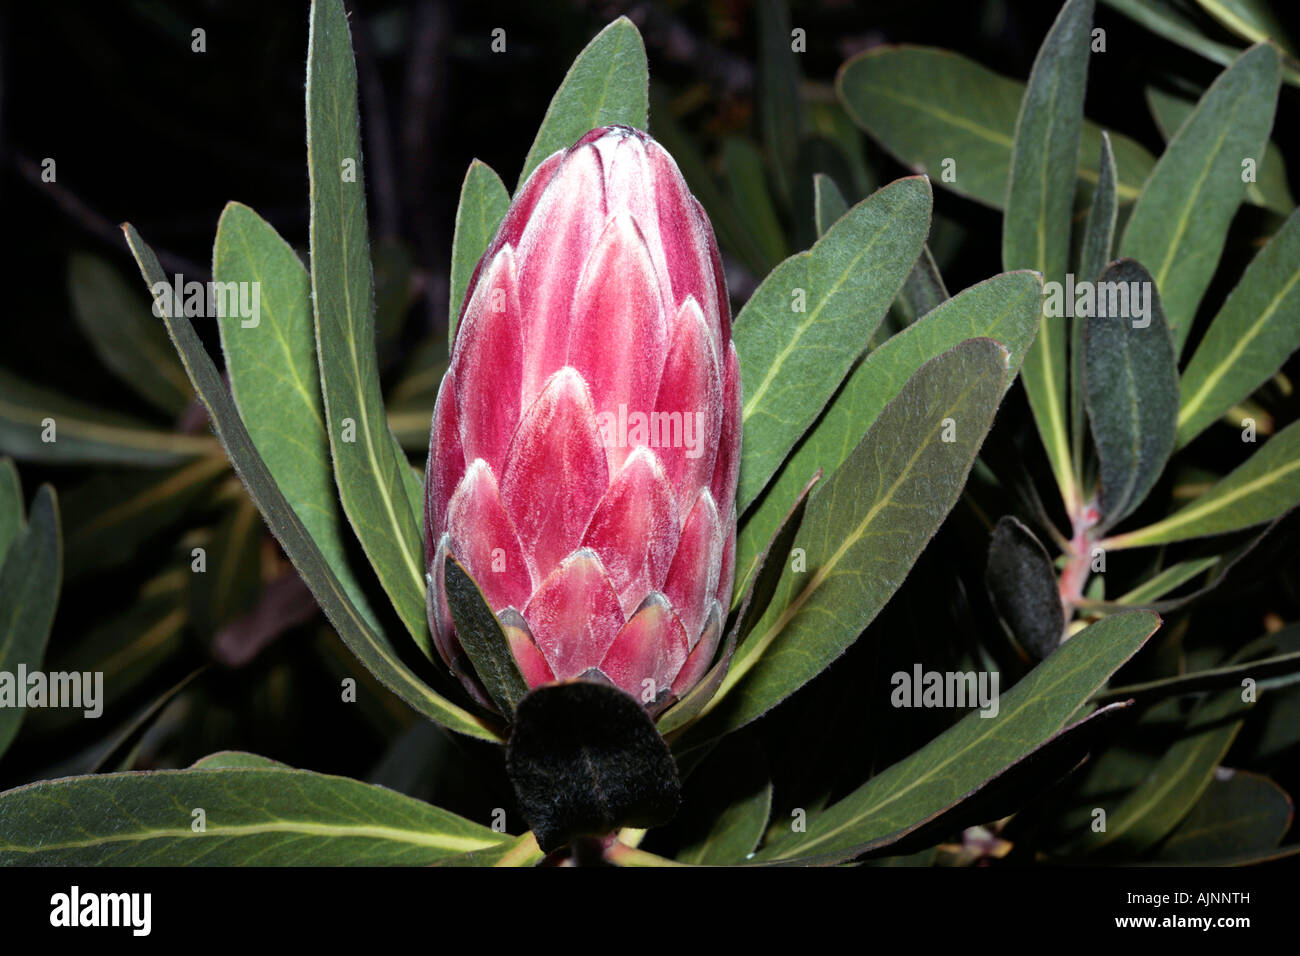 Protea/Sugarbush- Protea repens Stock Photo